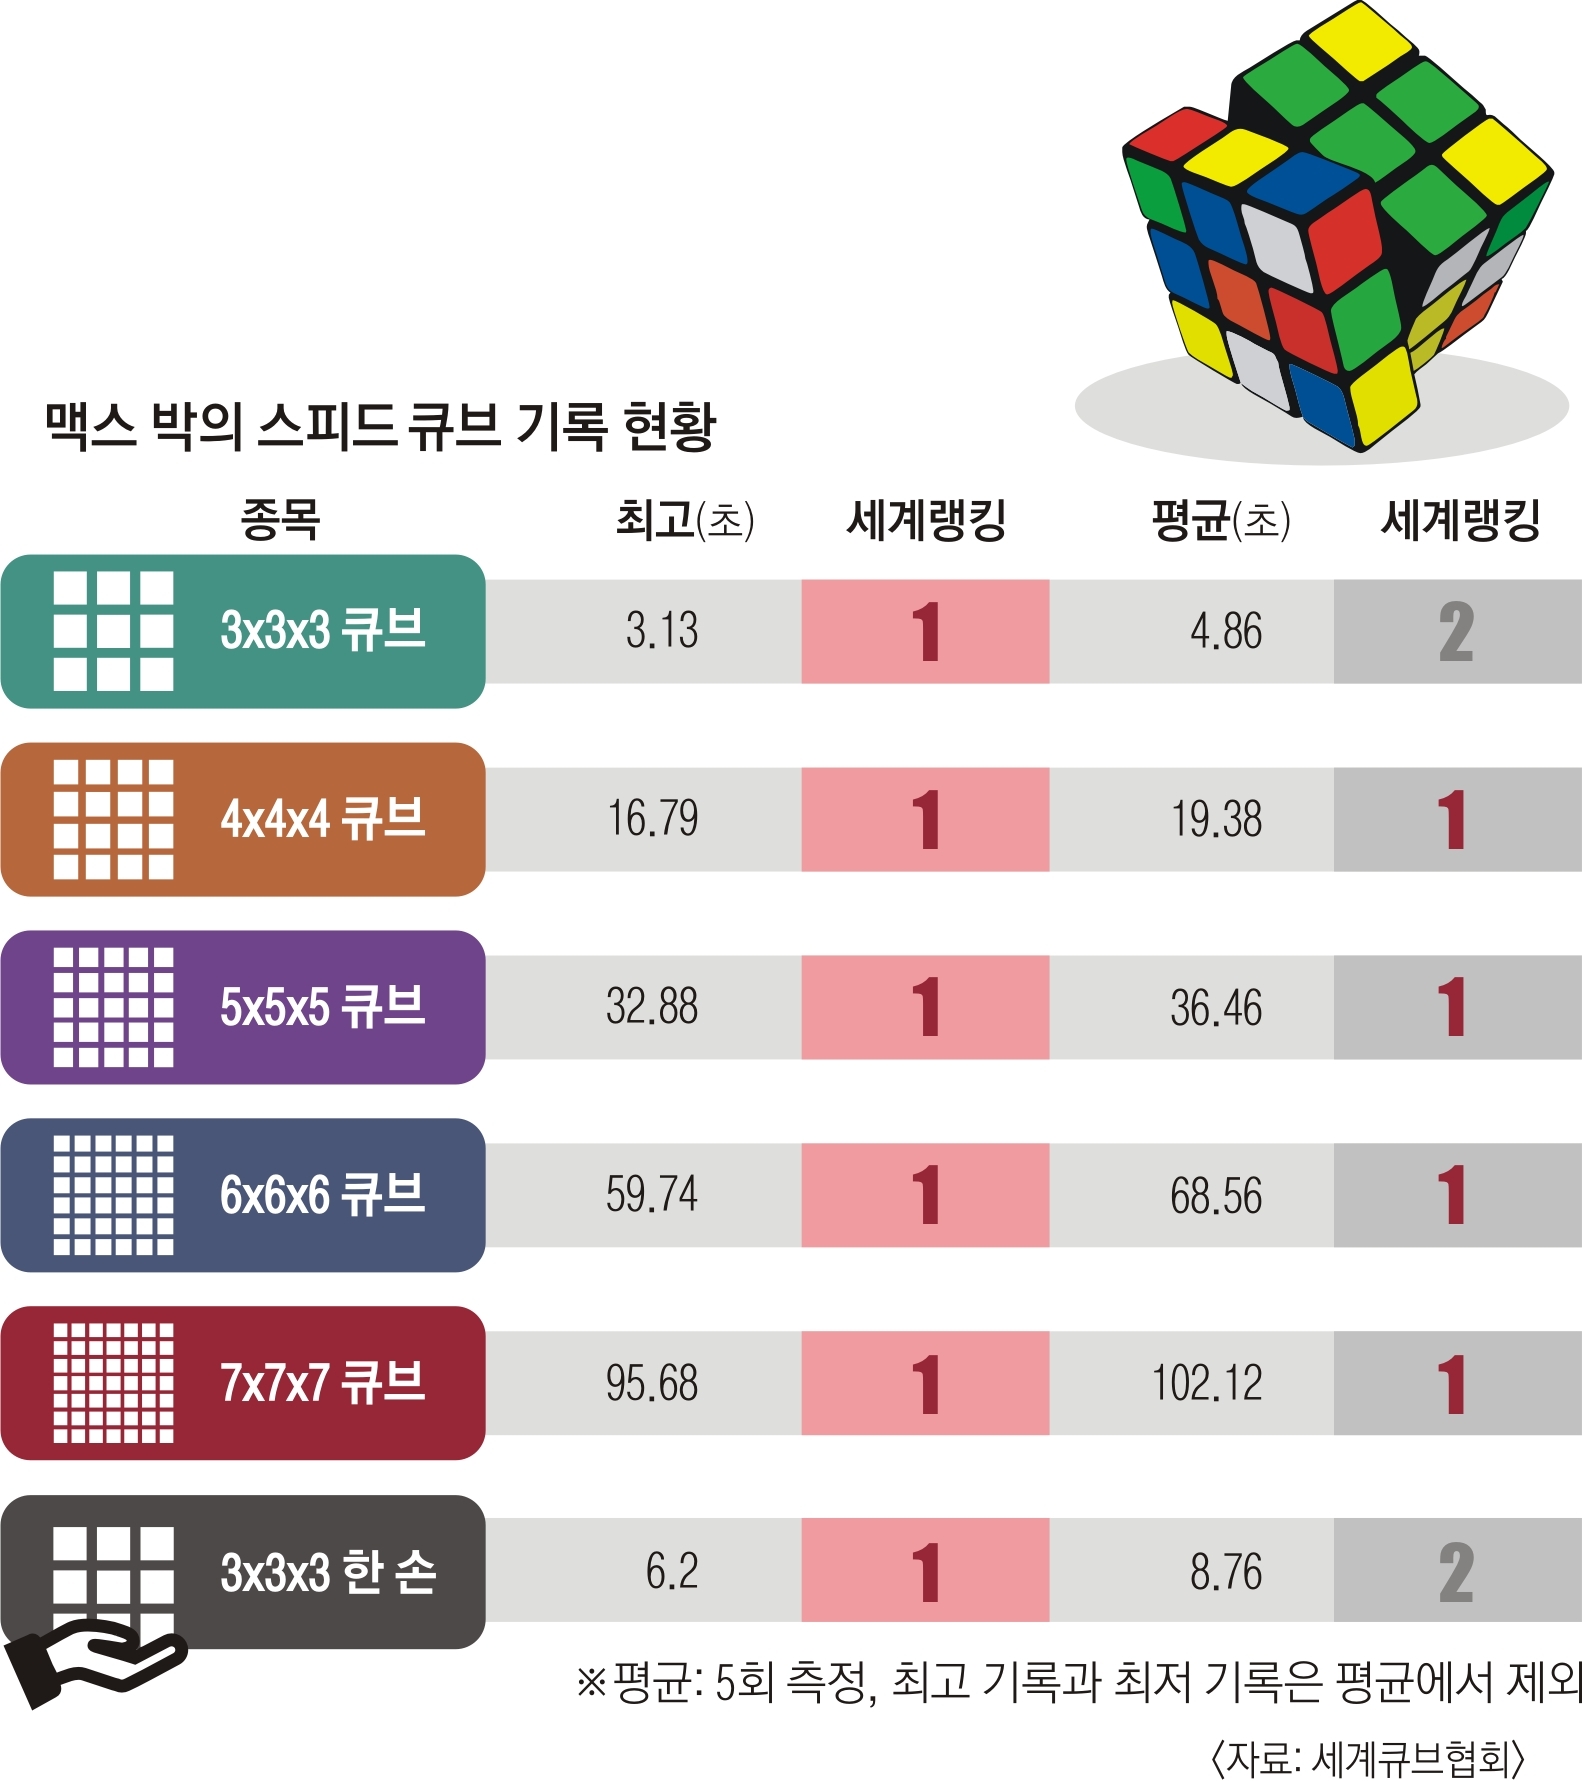 맥스 박의 스피드 큐브 기록 현황